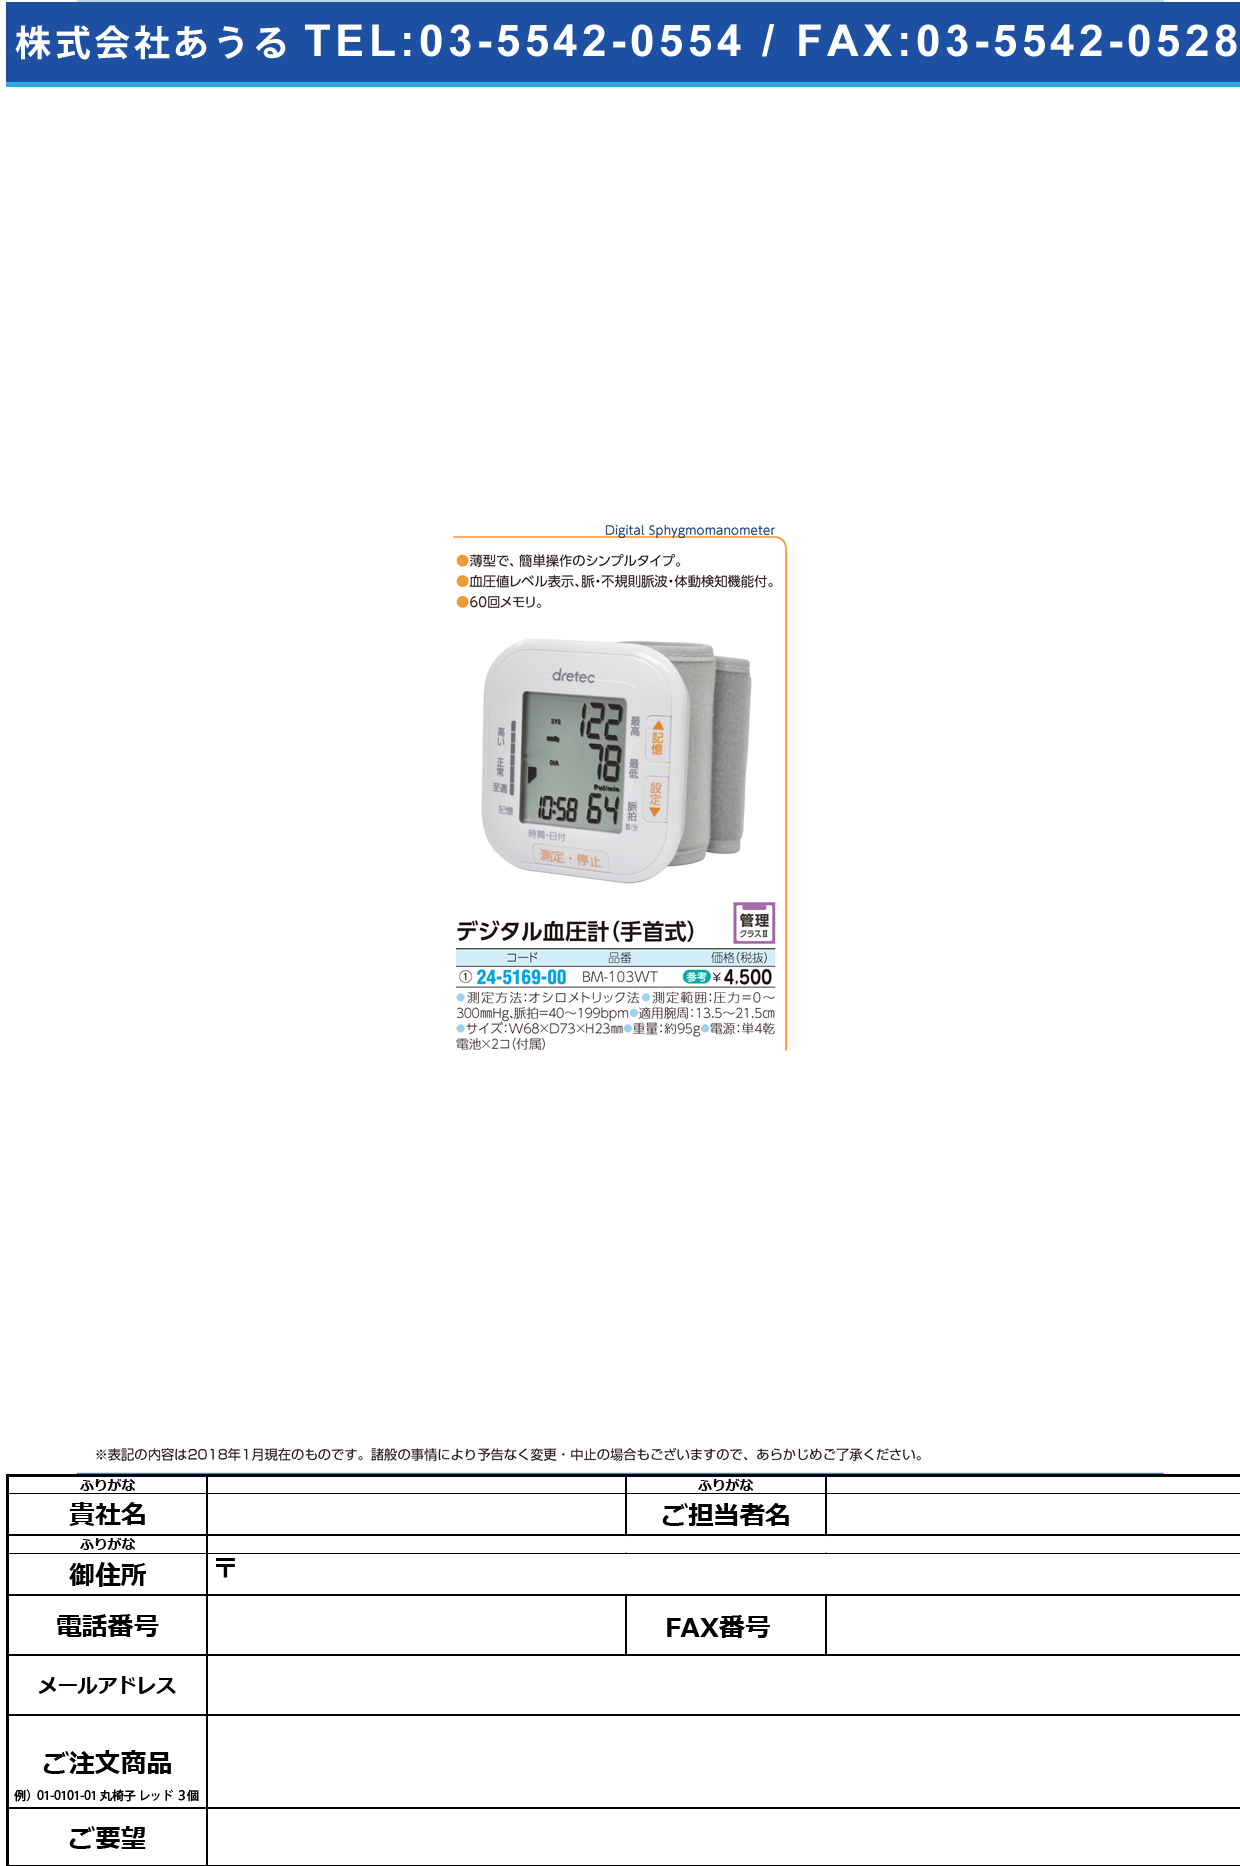 (24-5169-00)手首式血圧計 BM-103WT(ﾎﾜｲﾄ) ﾃｸﾋﾞｼｷｹﾂｱﾂｹｲ(ドリテック)【1台単位】【2018年カタログ商品】